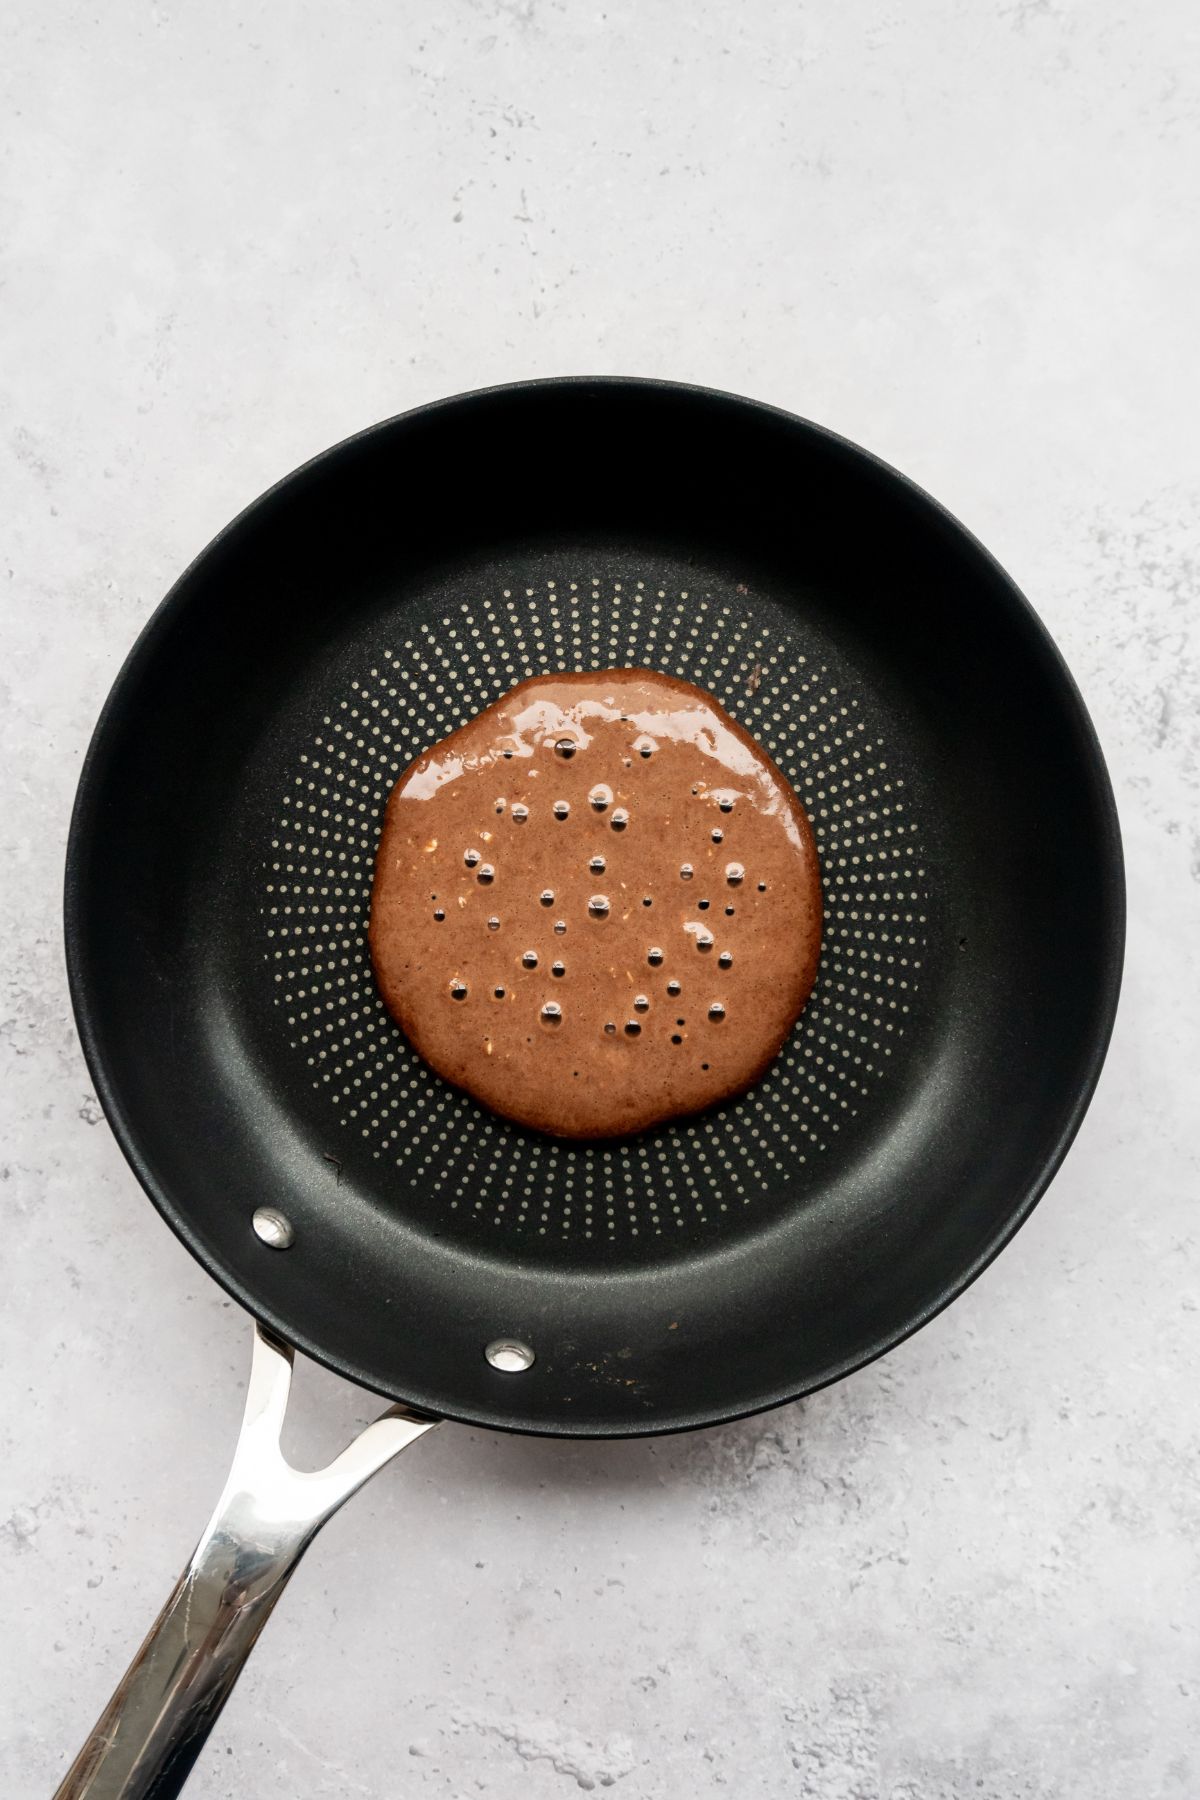 Chocolate pancake batter on a frying pan.